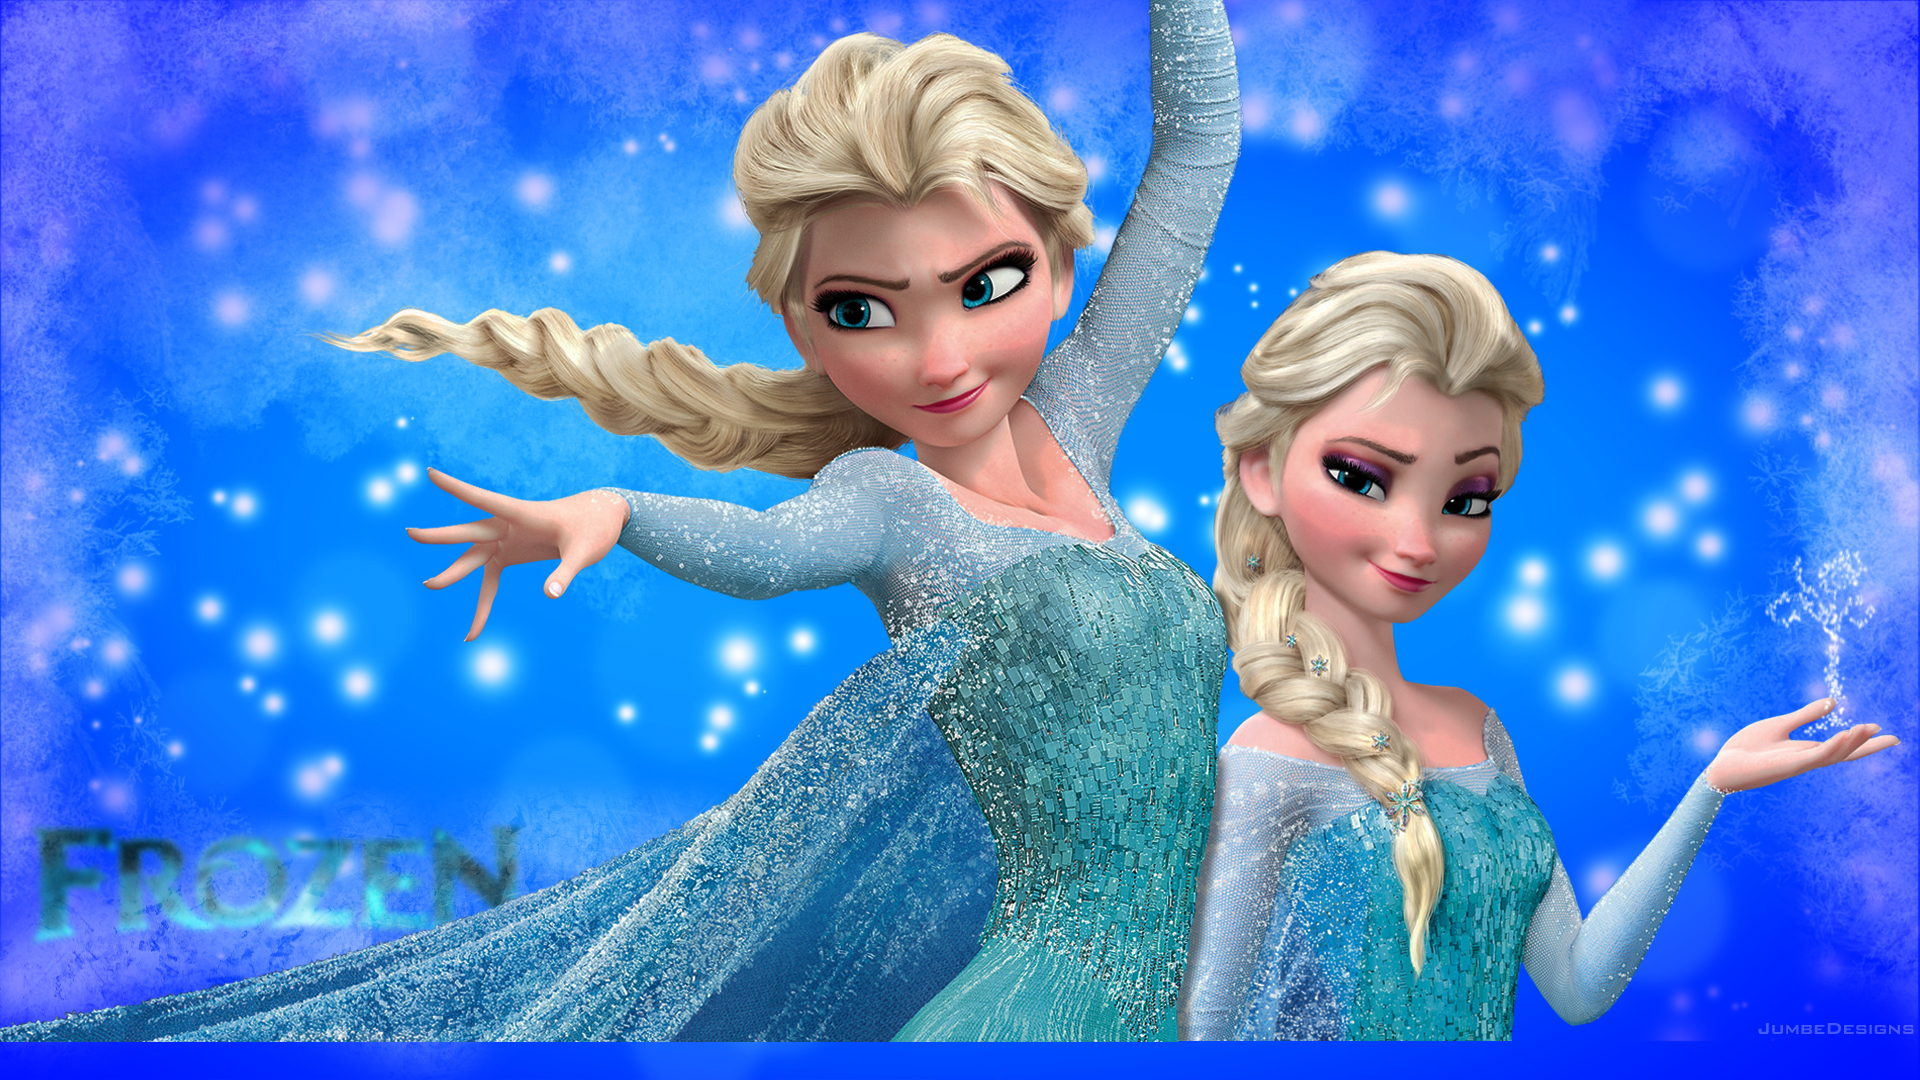 DeviantArt: More Like Frozen Elsa wallpaper hd by BestMovieWalls